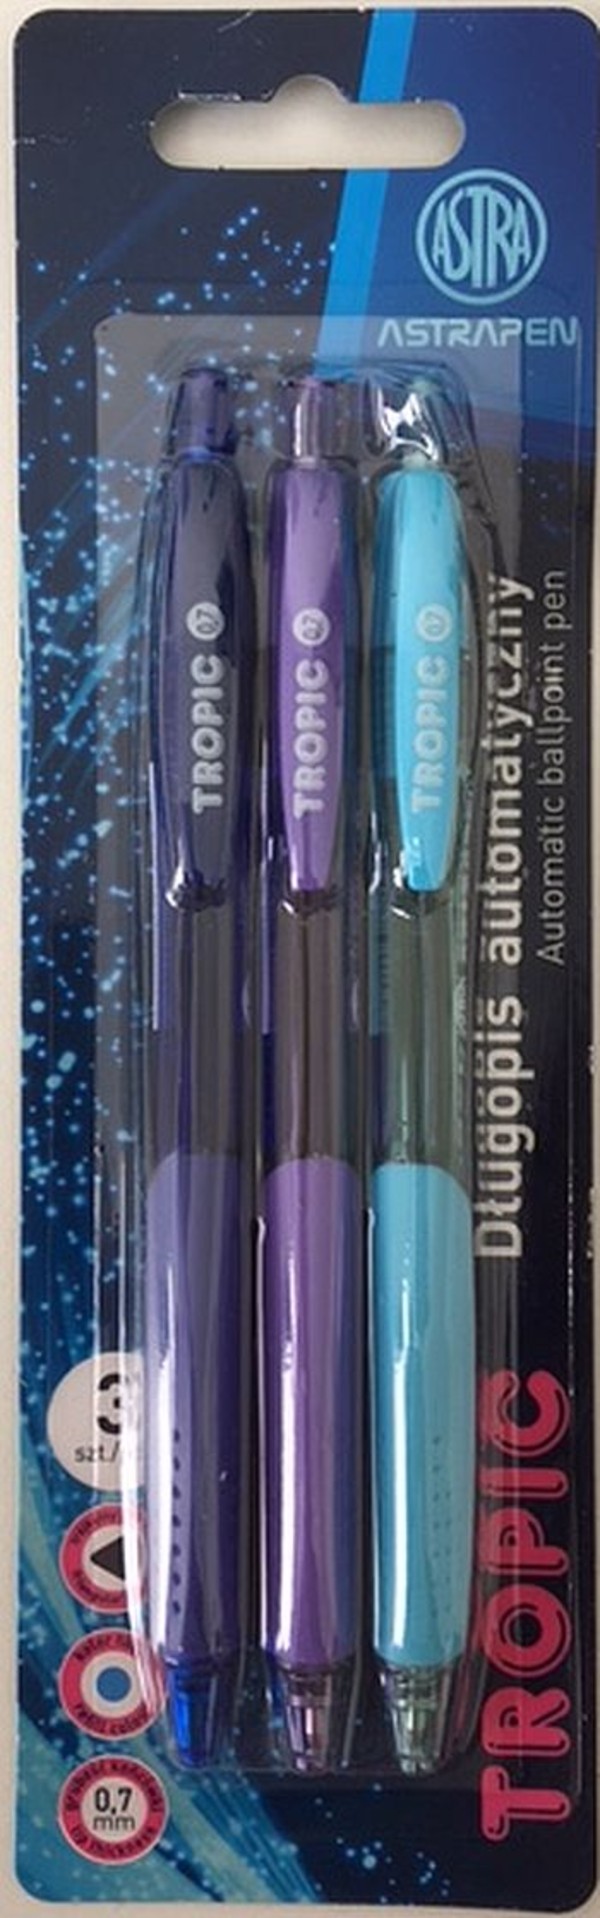 Długopis automatyczny tropic pen astra 0.7 mm blister 3 sztuki